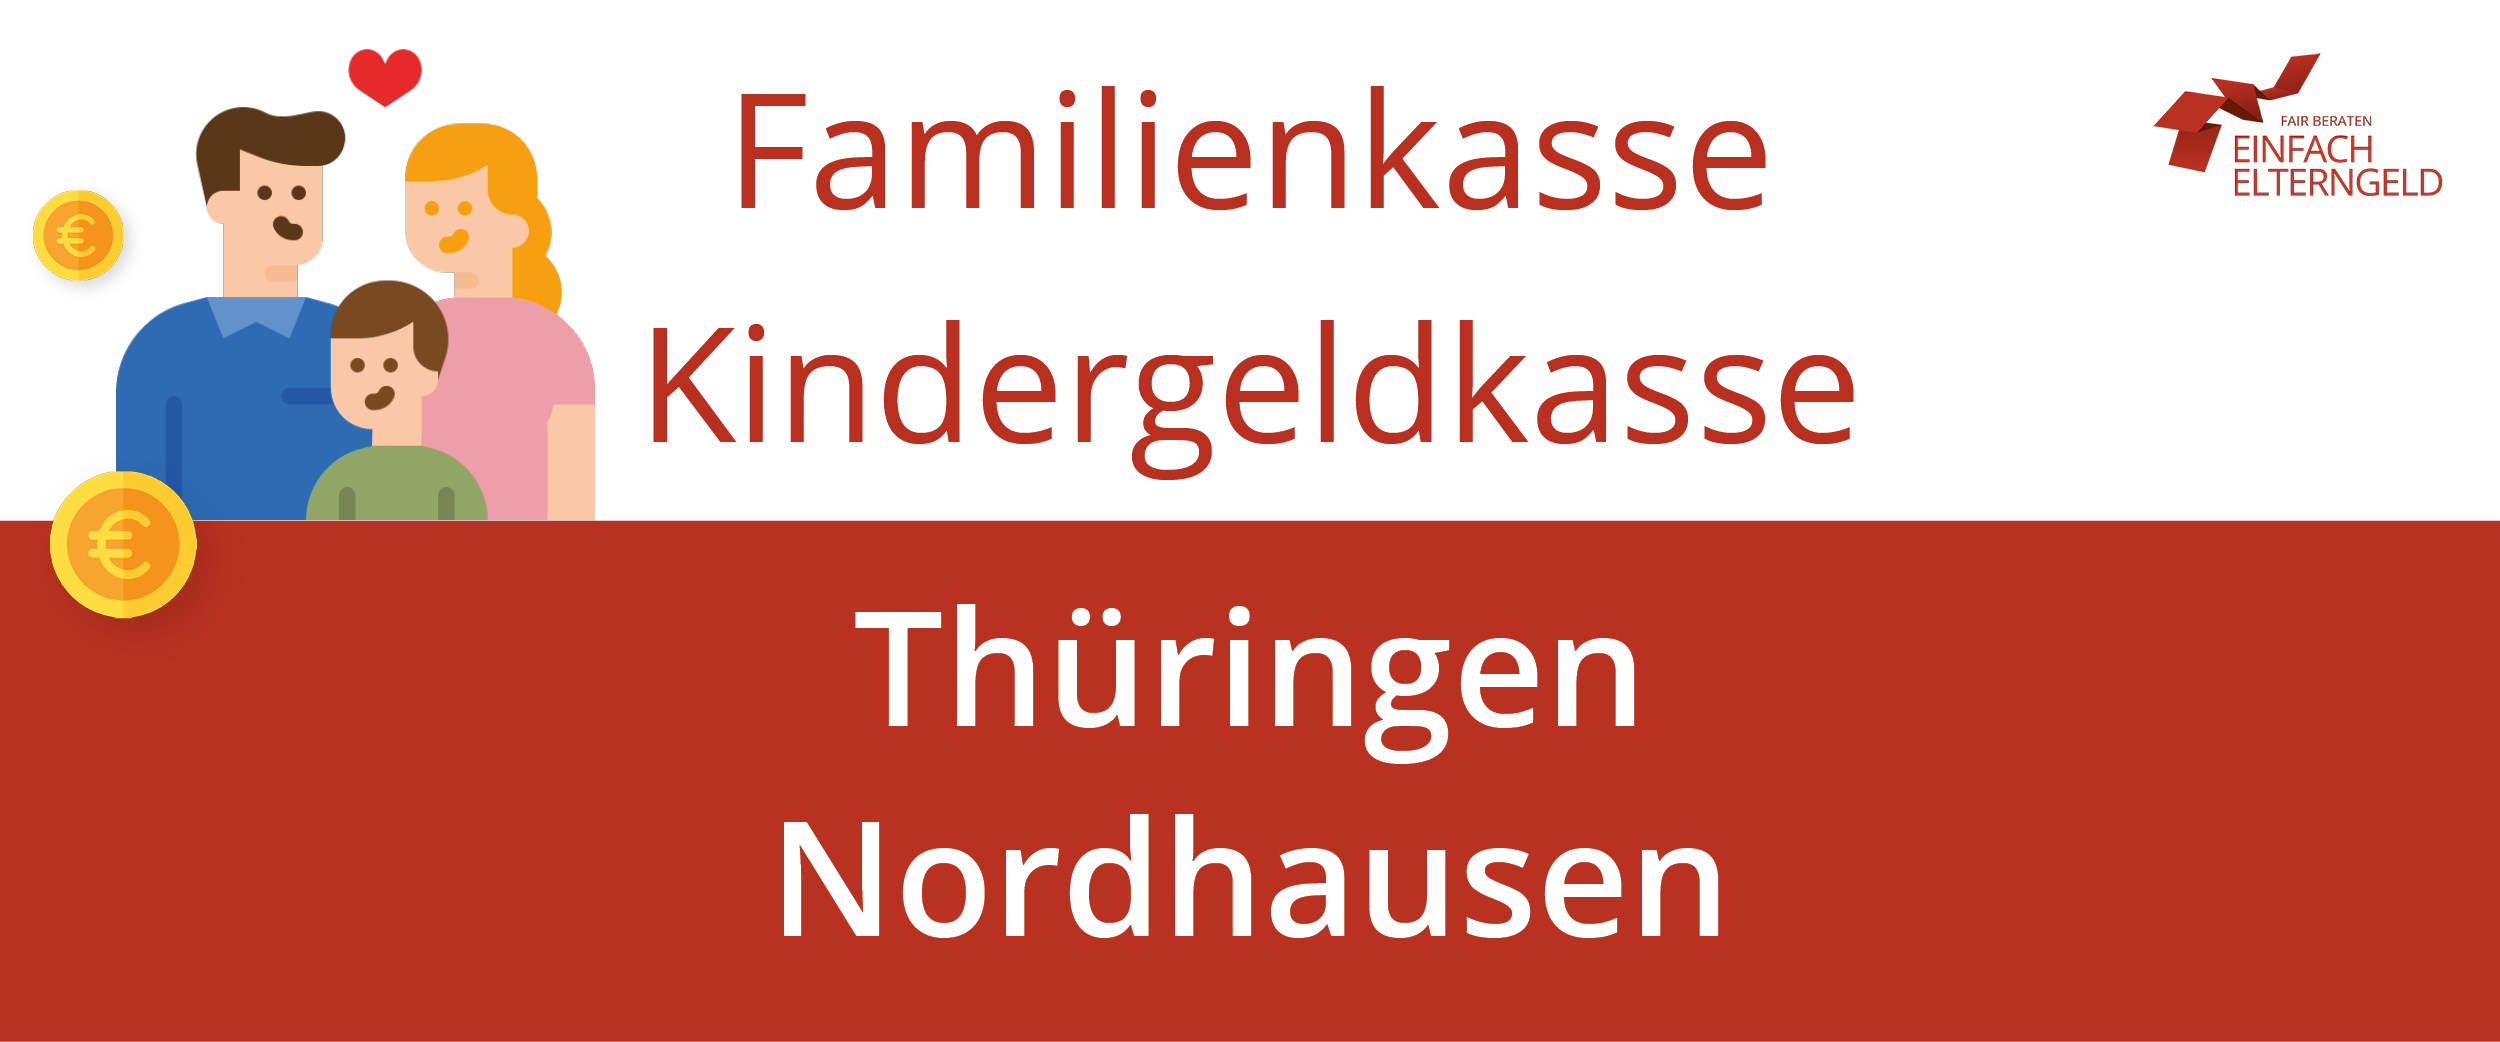 Familienkasse Kindergeldkasse Thüringen Nordhausen - So erreichen Sie Ihre Familienkasse.